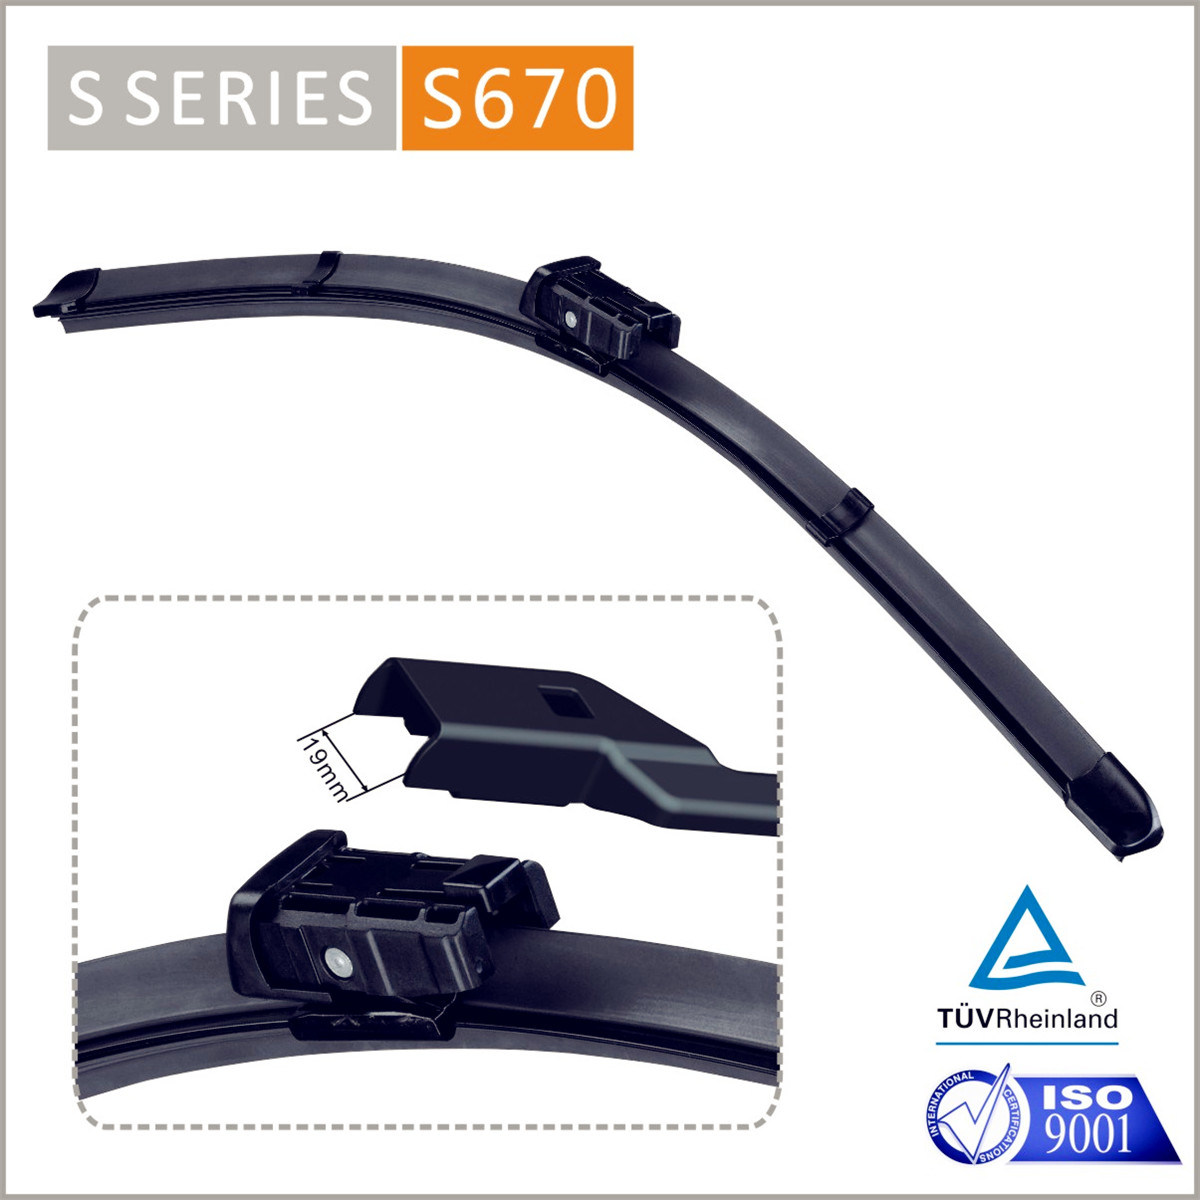 S670 4s Shop Auto Parts Octavia Hatchback Mk2 MK3 Vision Saver Cleaner Quiet Smooth Driver Passenger Windshield Wiper Blade